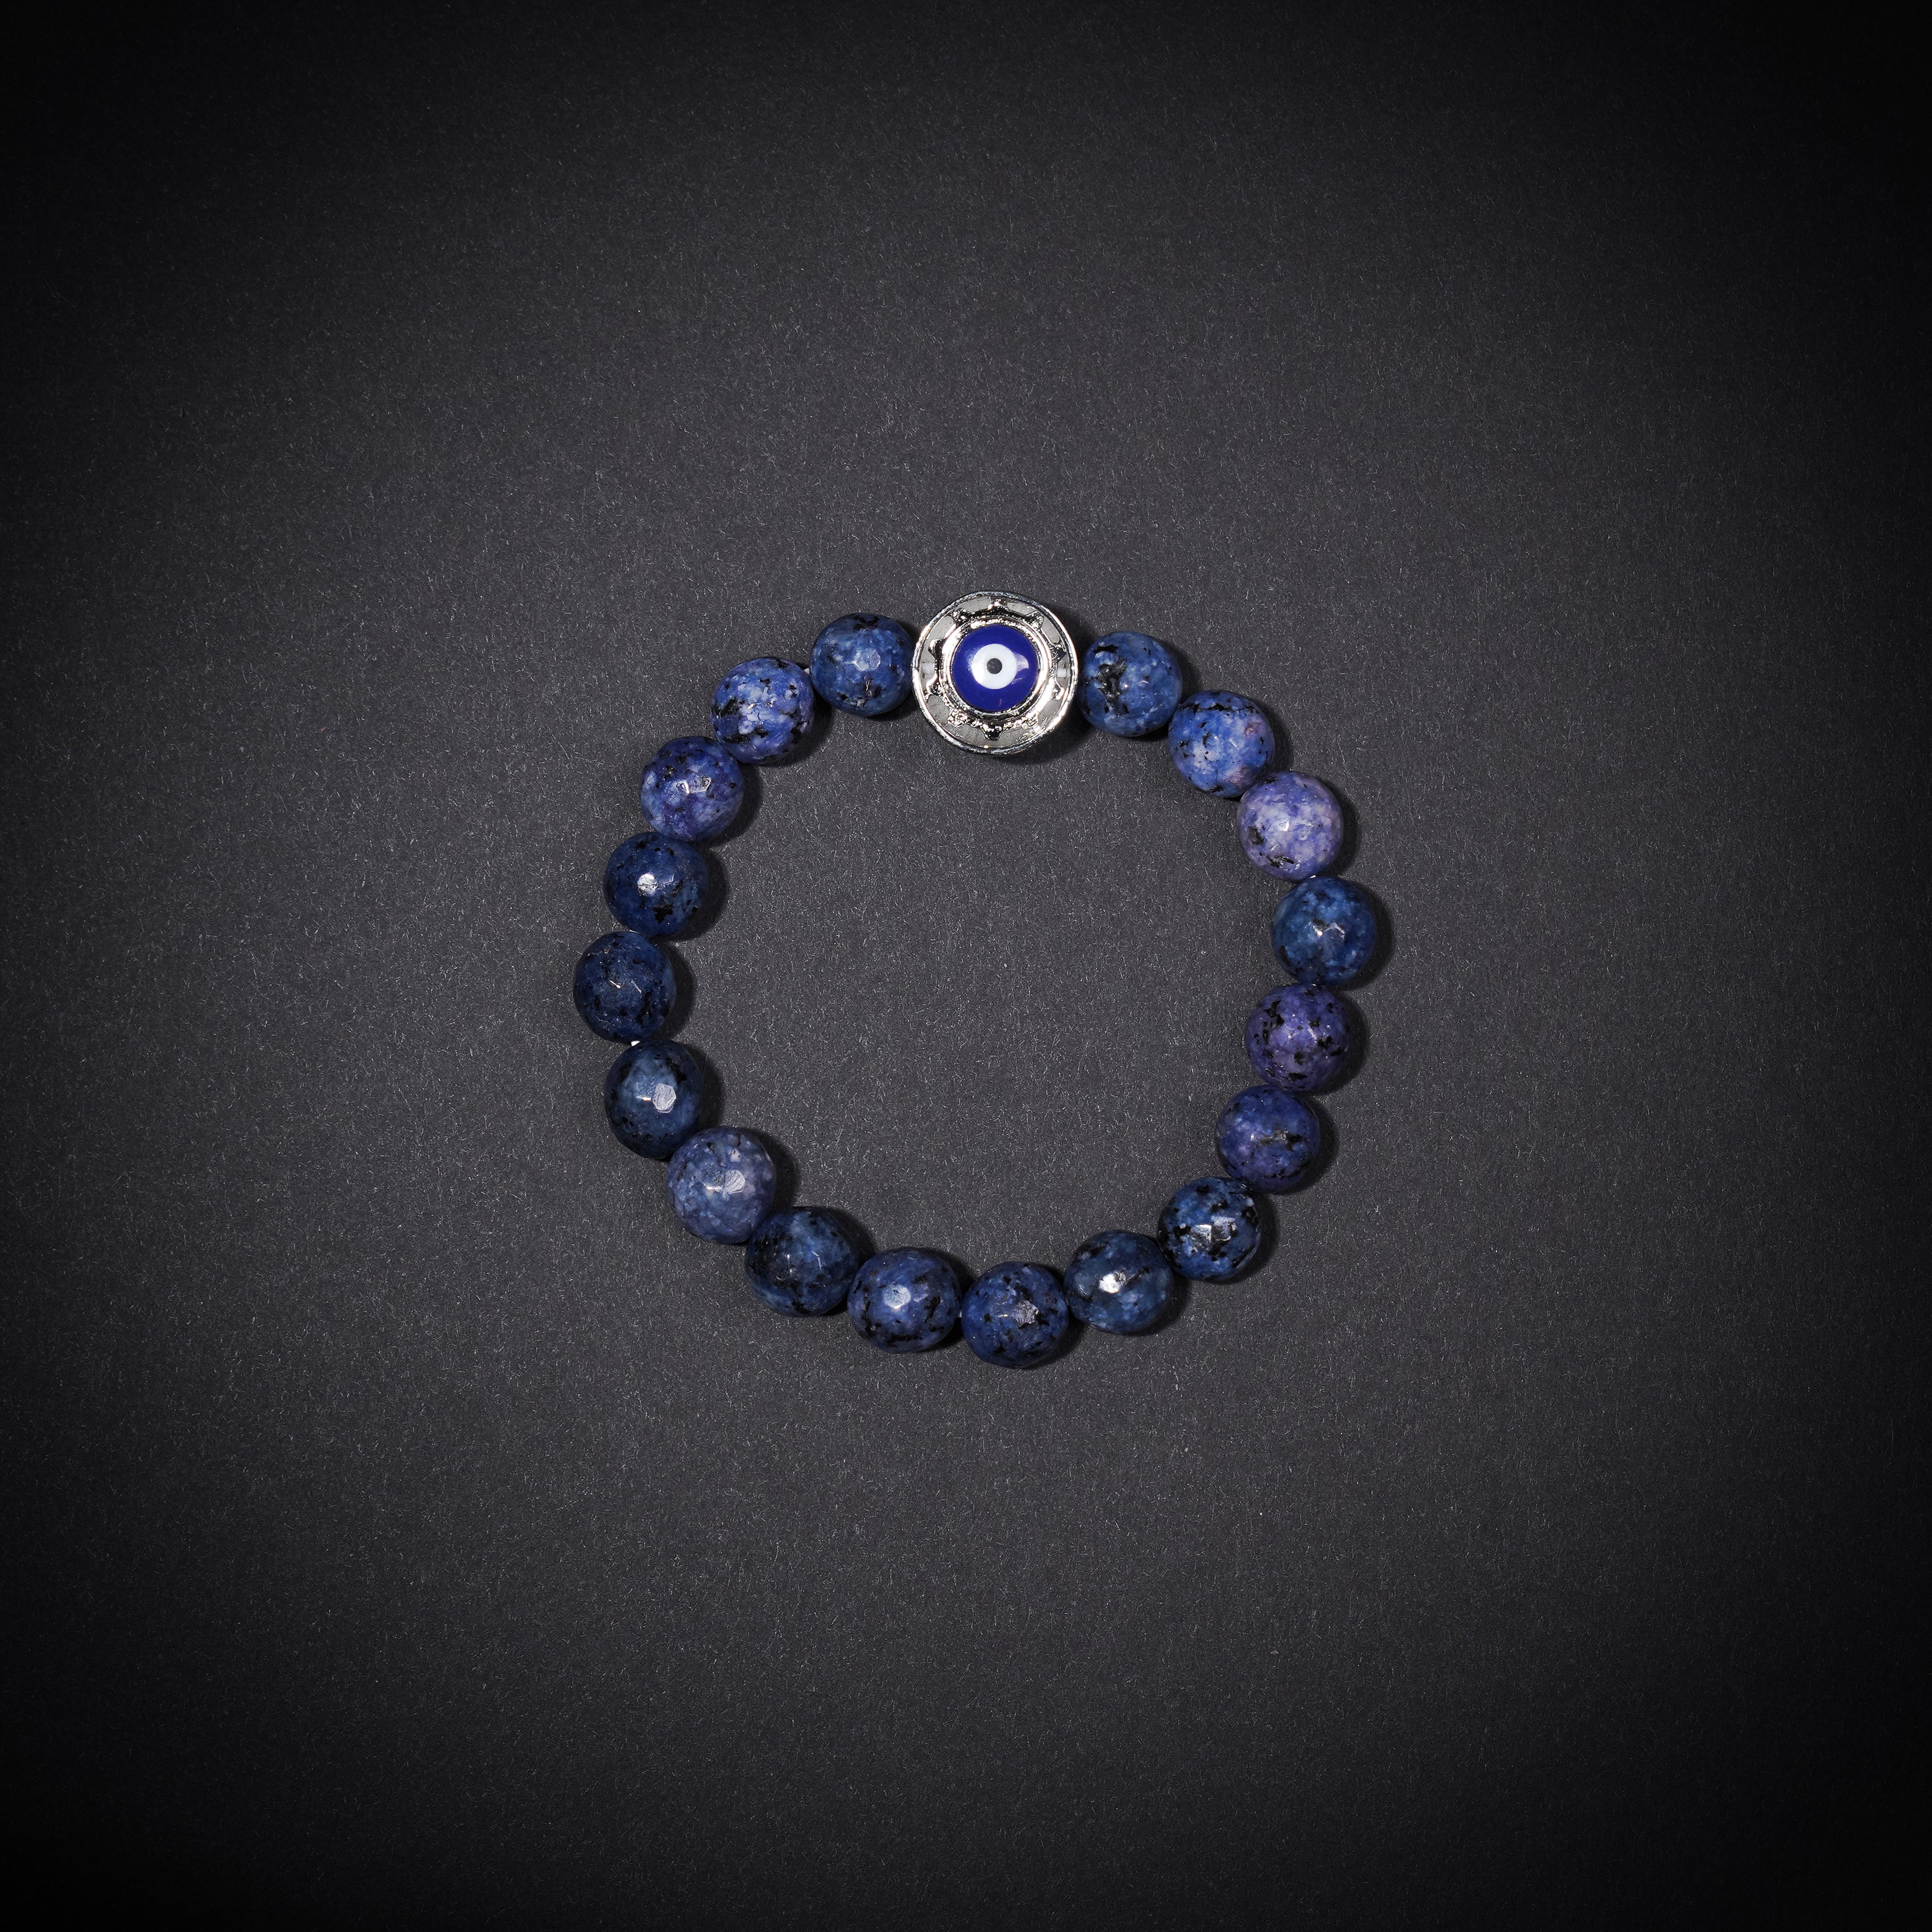 Blue Evil Eye Beads Bracelet